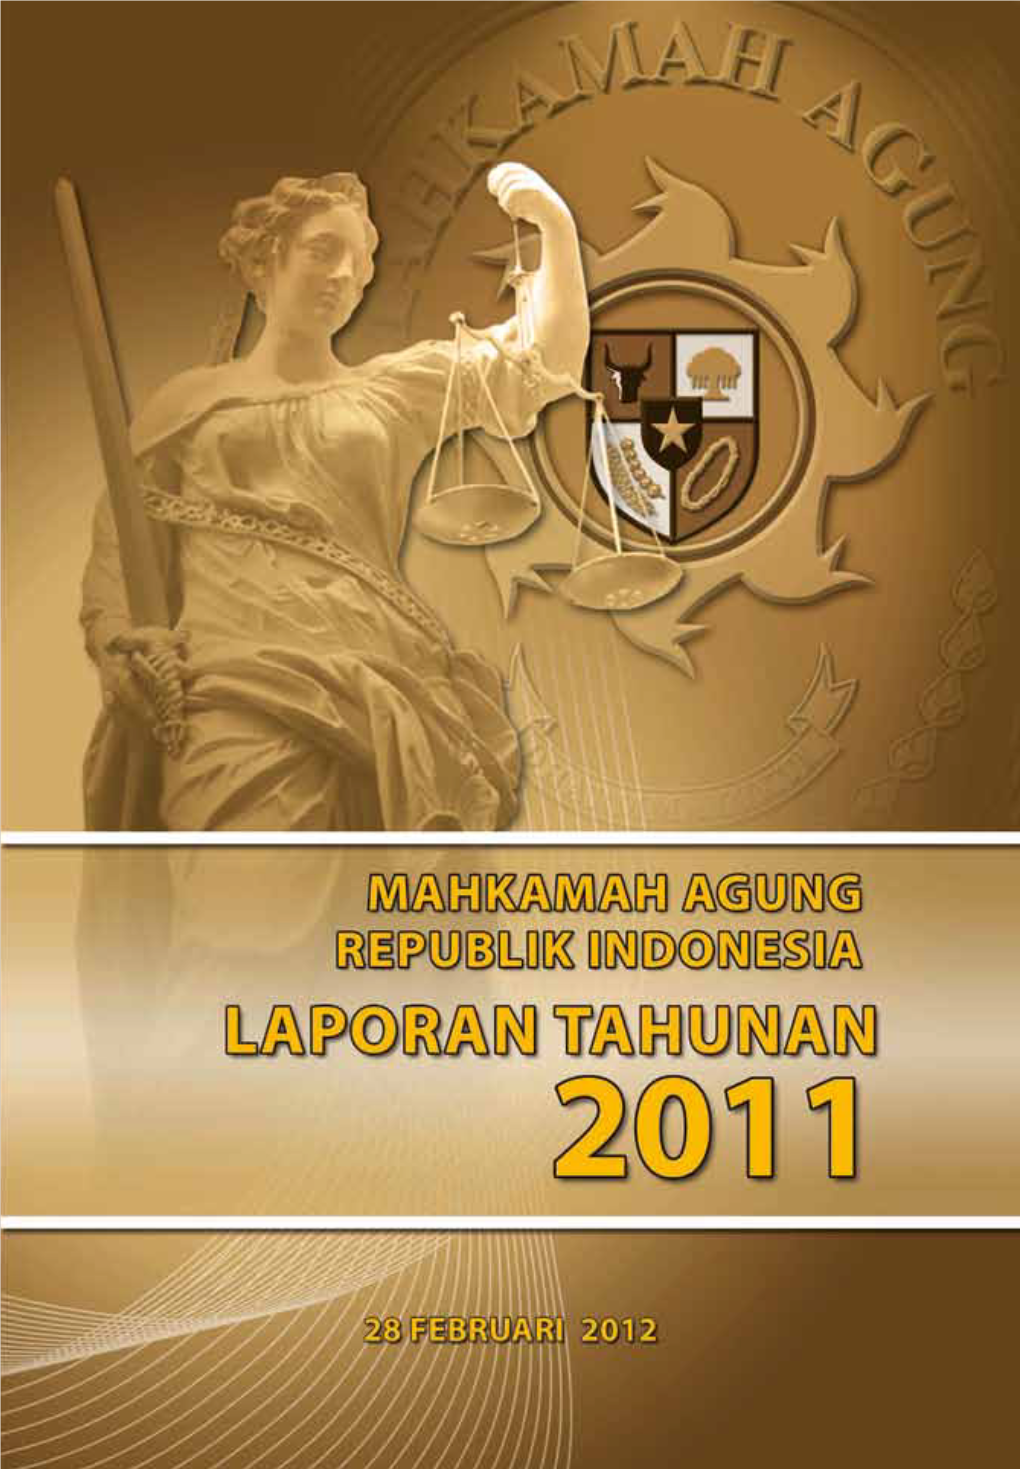 Laporan Tahunan Mahkamah Agung RI - Tahun 2011 I Laporan Tahunan Mahkamah Agung RI - Tahun 2011 Ii LAPORAN TAHUNAN MAHKAMAH AGUNG REPUBLIK INDONESIA 2011